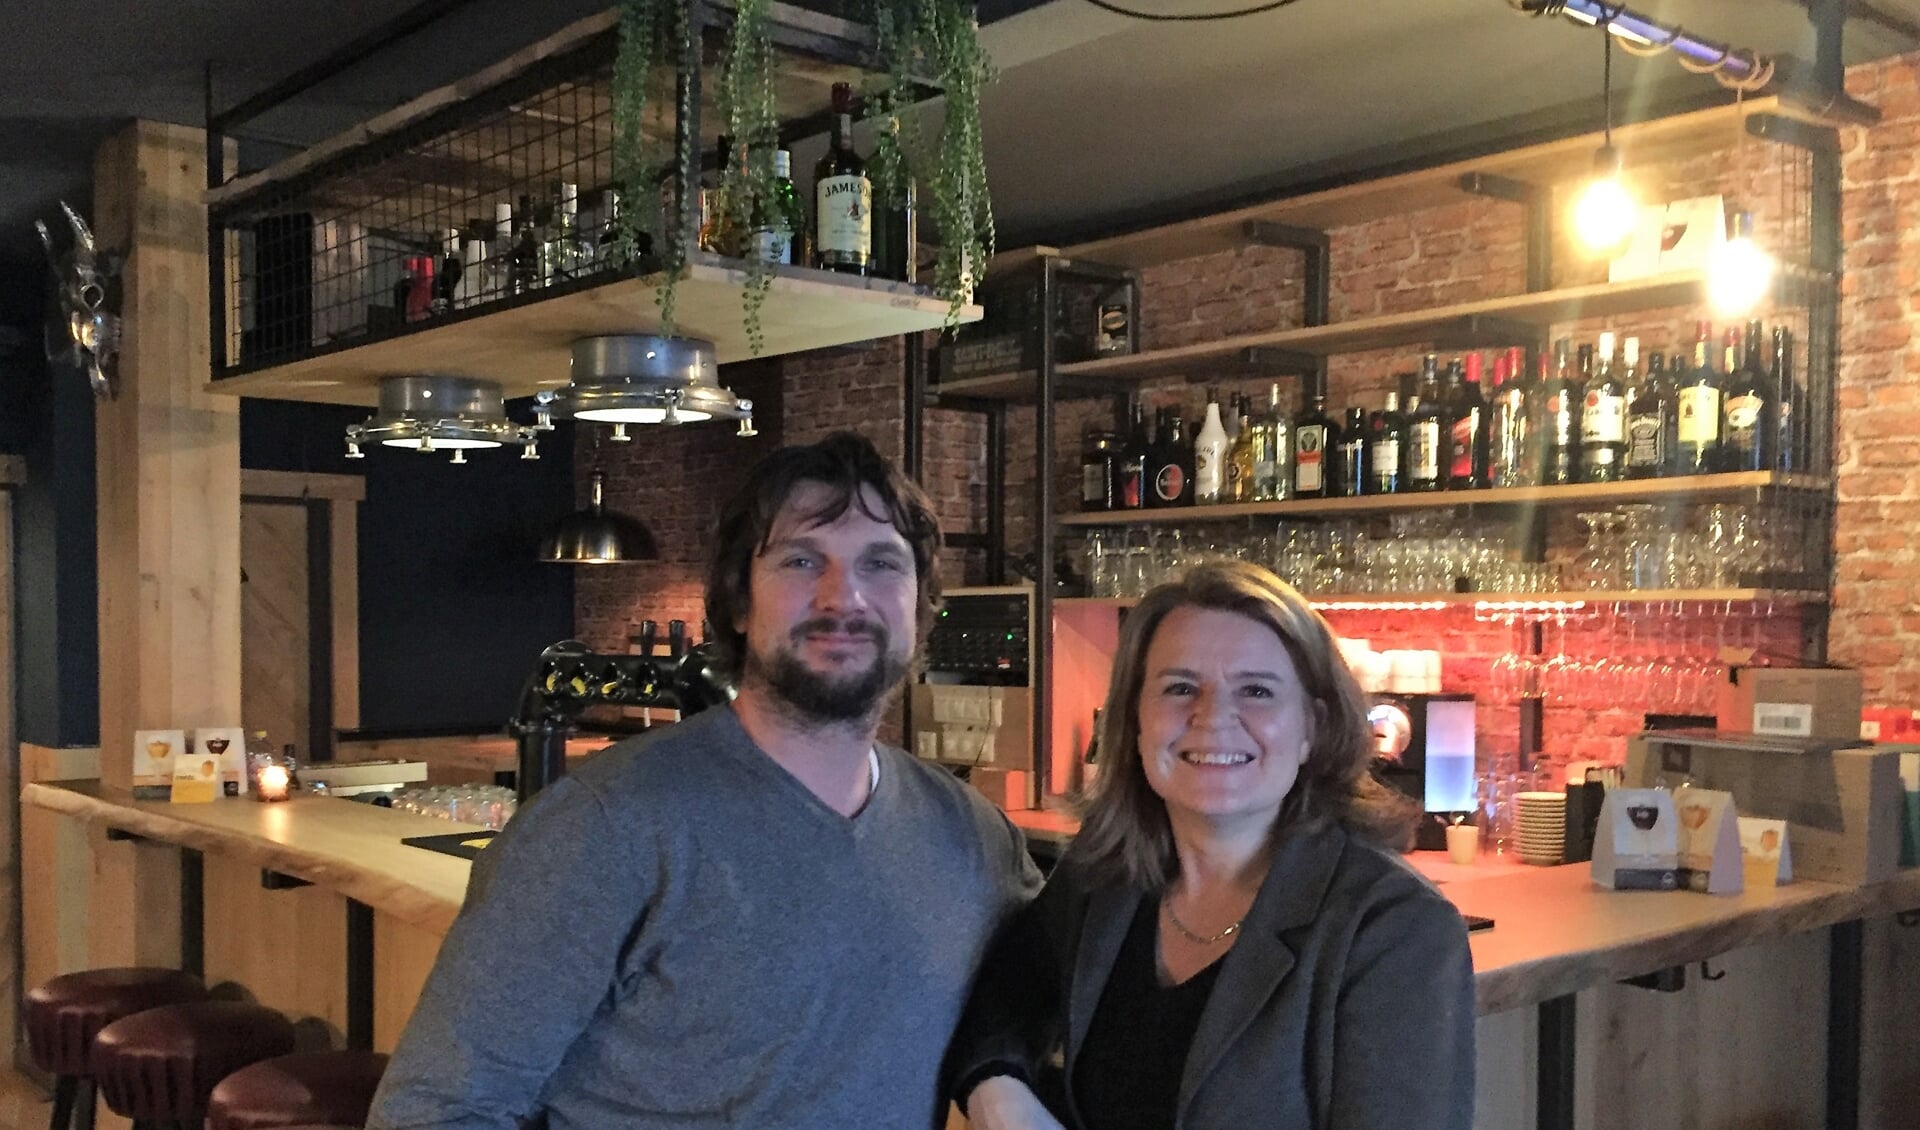  Patrick en Jonna De Waerdt willen met hun café Leersumers een tweede huiskamer bieden in het dorp.